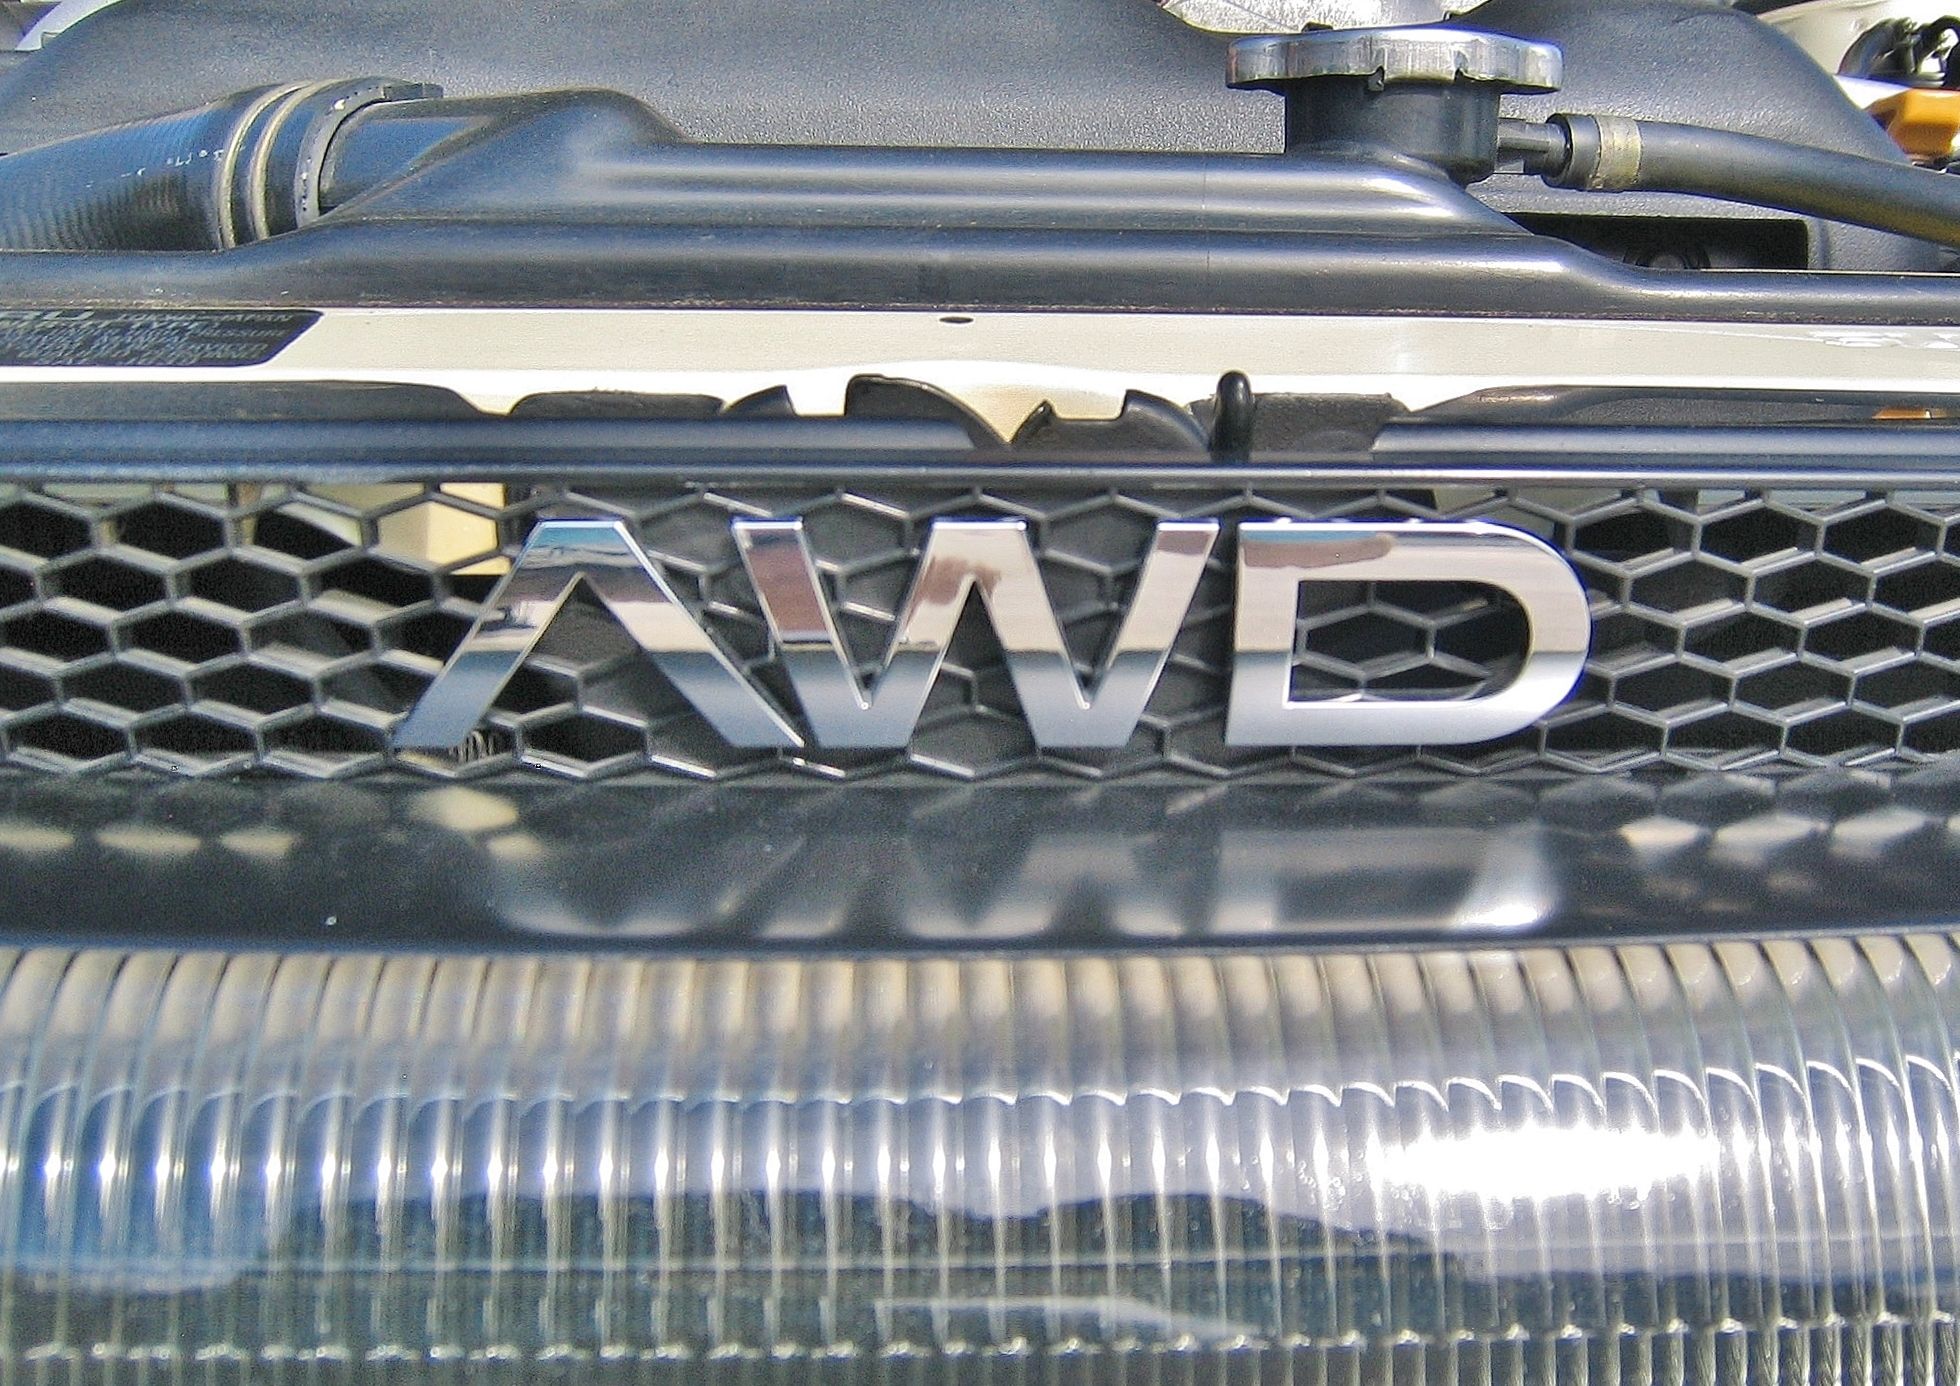 Subaru SVX AWD badge